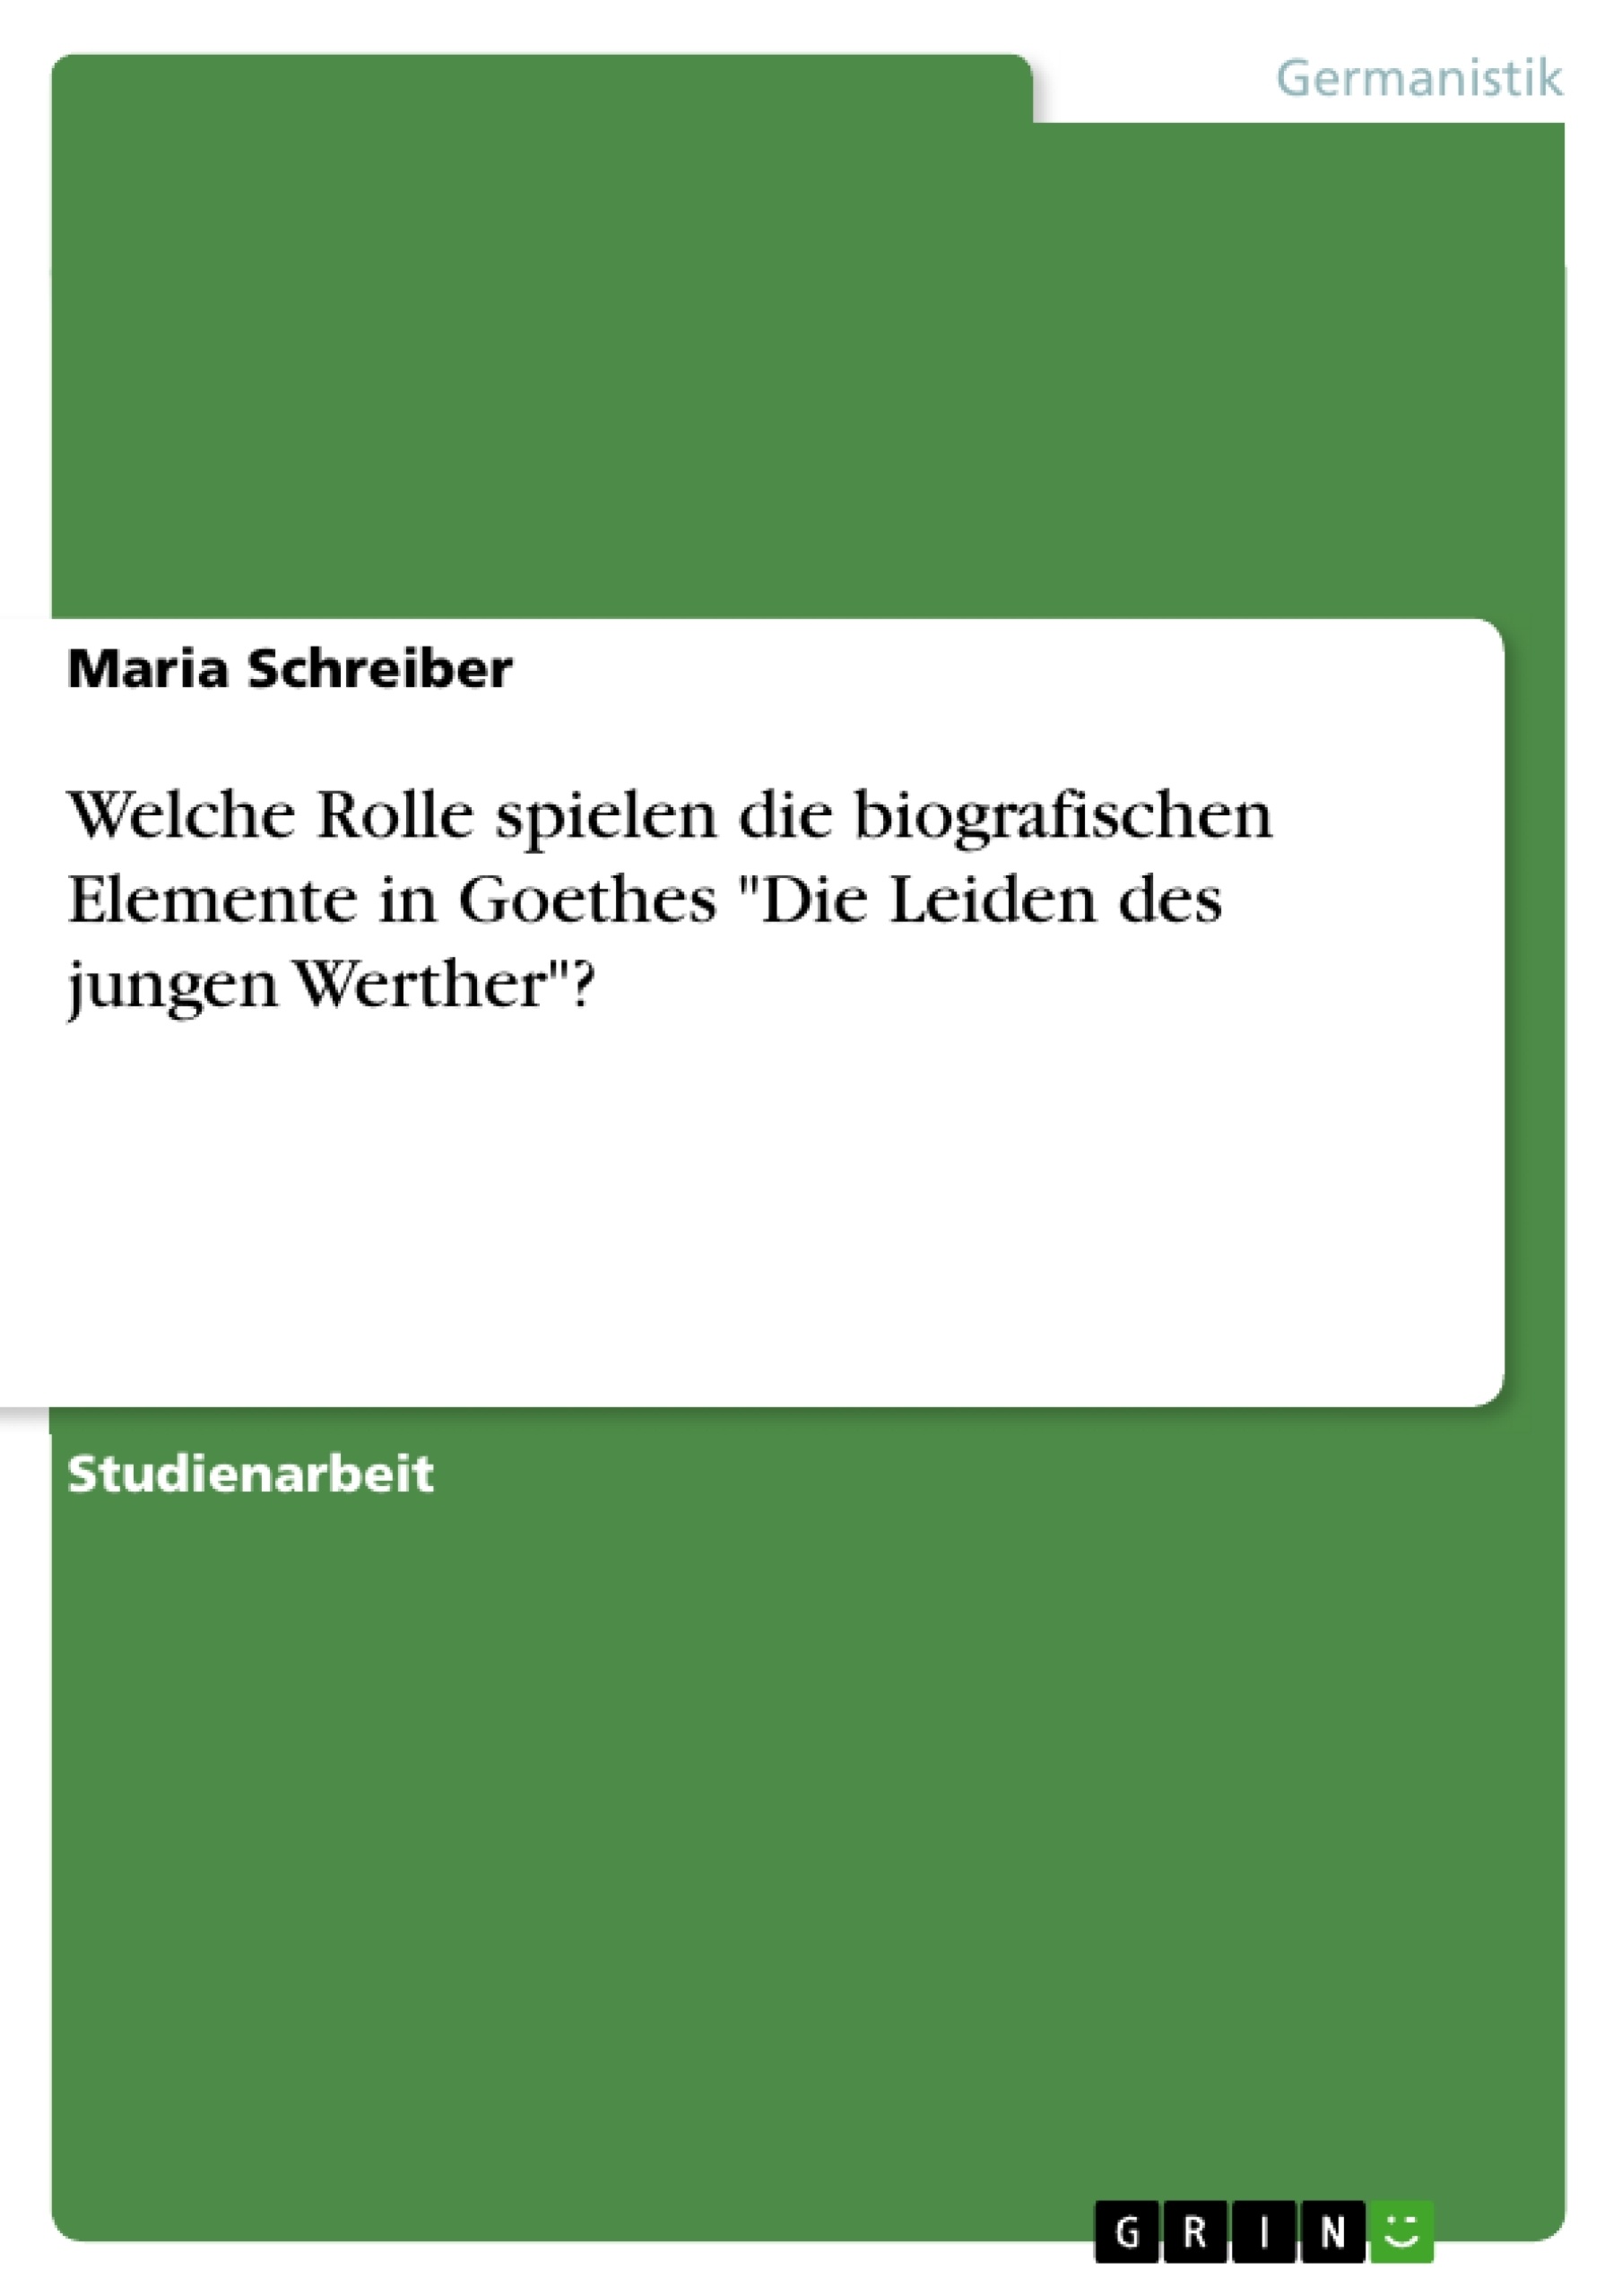 Titre: Welche Rolle spielen die biografischen Elemente in Goethes "Die Leiden des jungen Werther"?